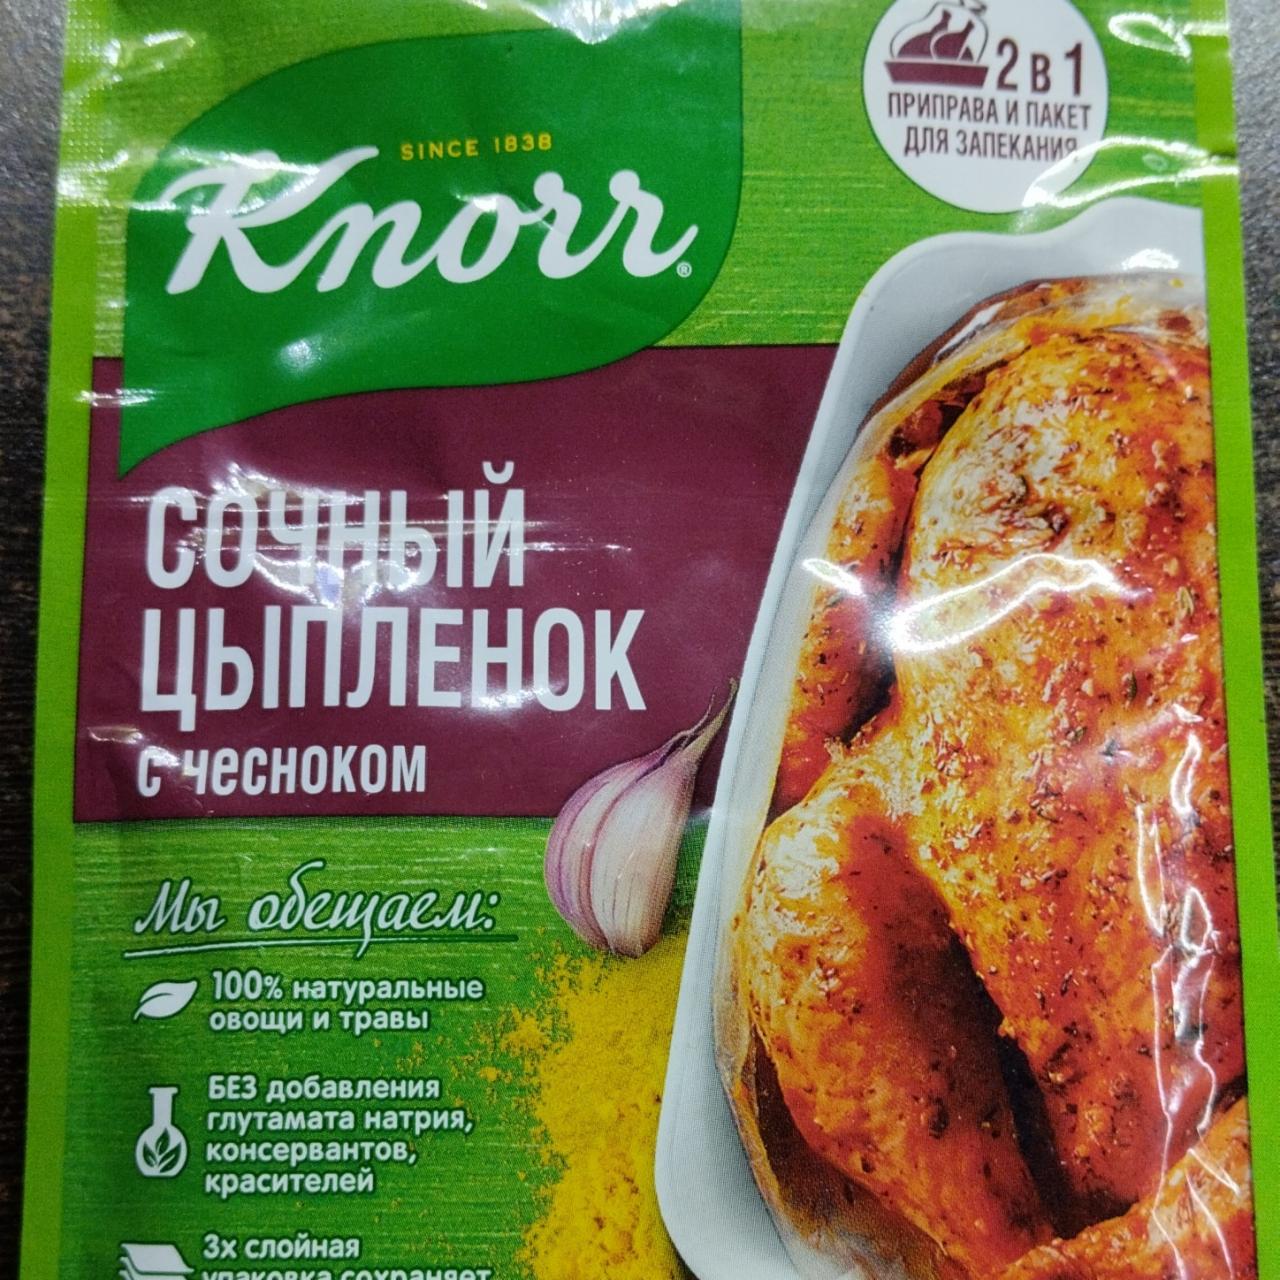 Фото - Сочный цыпленок с чесноком Knorr